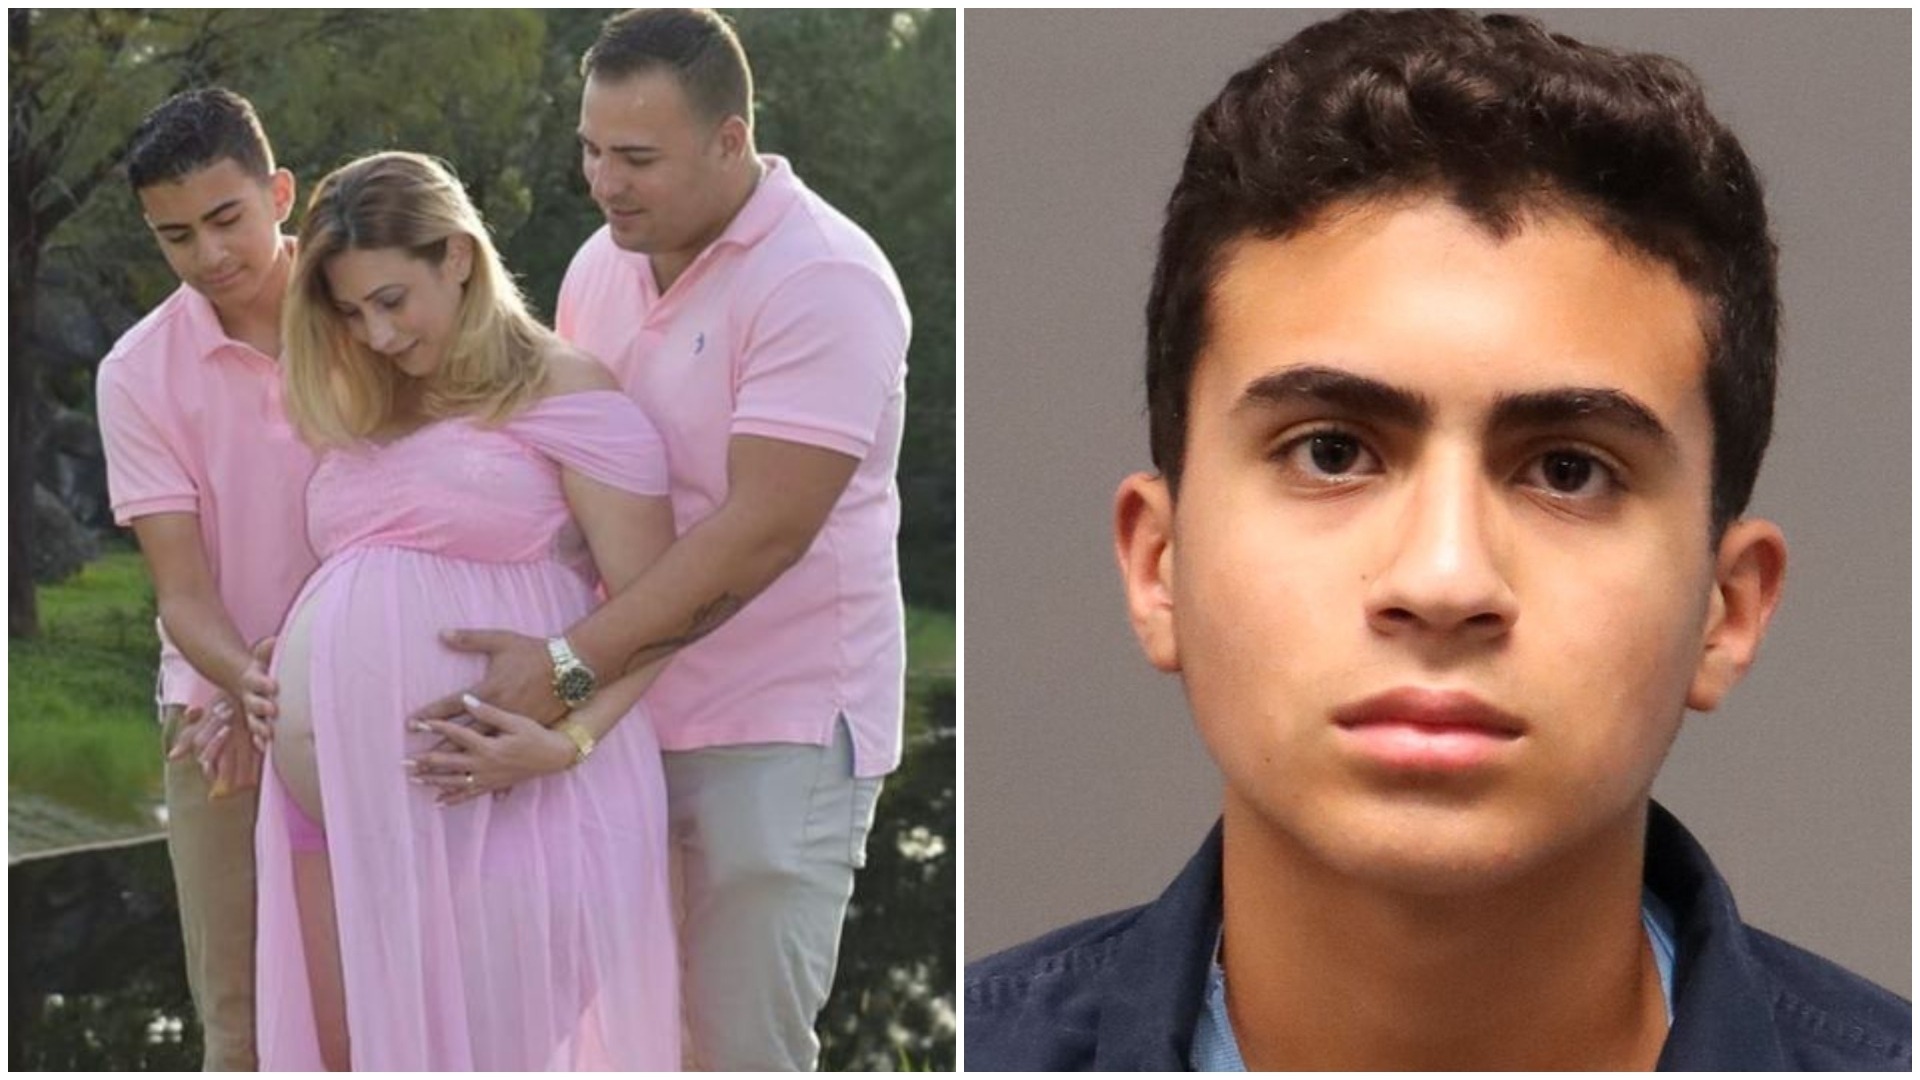 “¿Mataste a tu mamá?”: la escalofriante llamada entre una operadora del 911 y un joven asesino en Florida